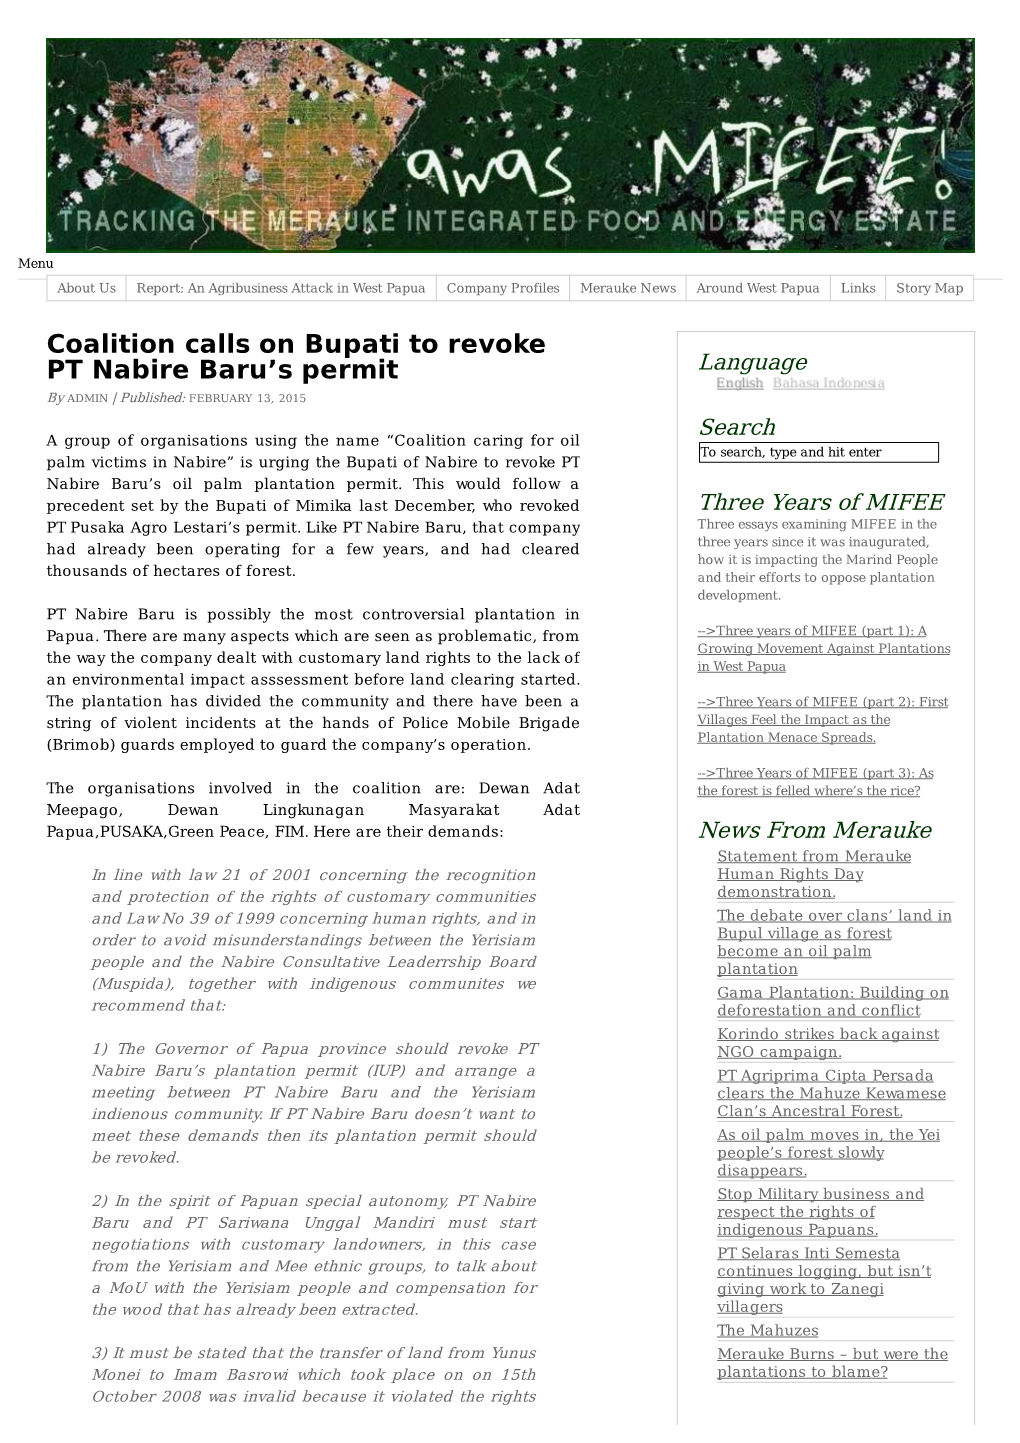 Coalition Calls on Bupati to Revoke PT Nabire Baru's Permit